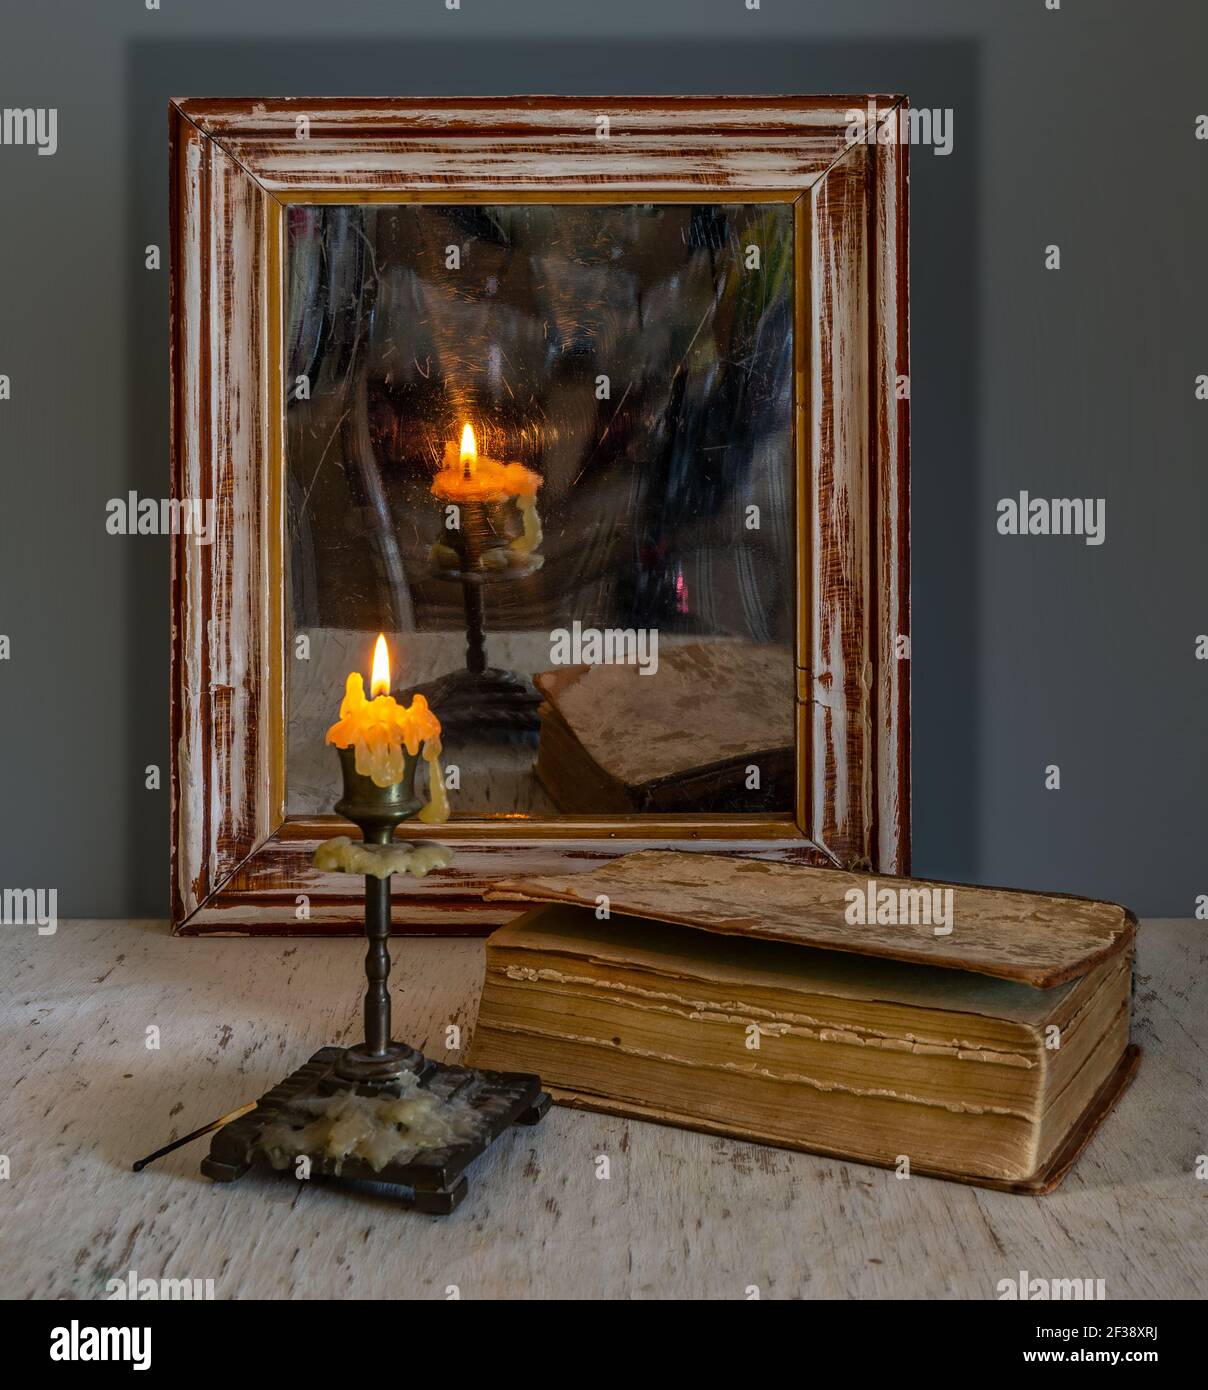 Une bougie allumée se reflète dans un vieux miroir dans un cadre en bois et illumine les livres sur la table. Vintage. Banque D'Images